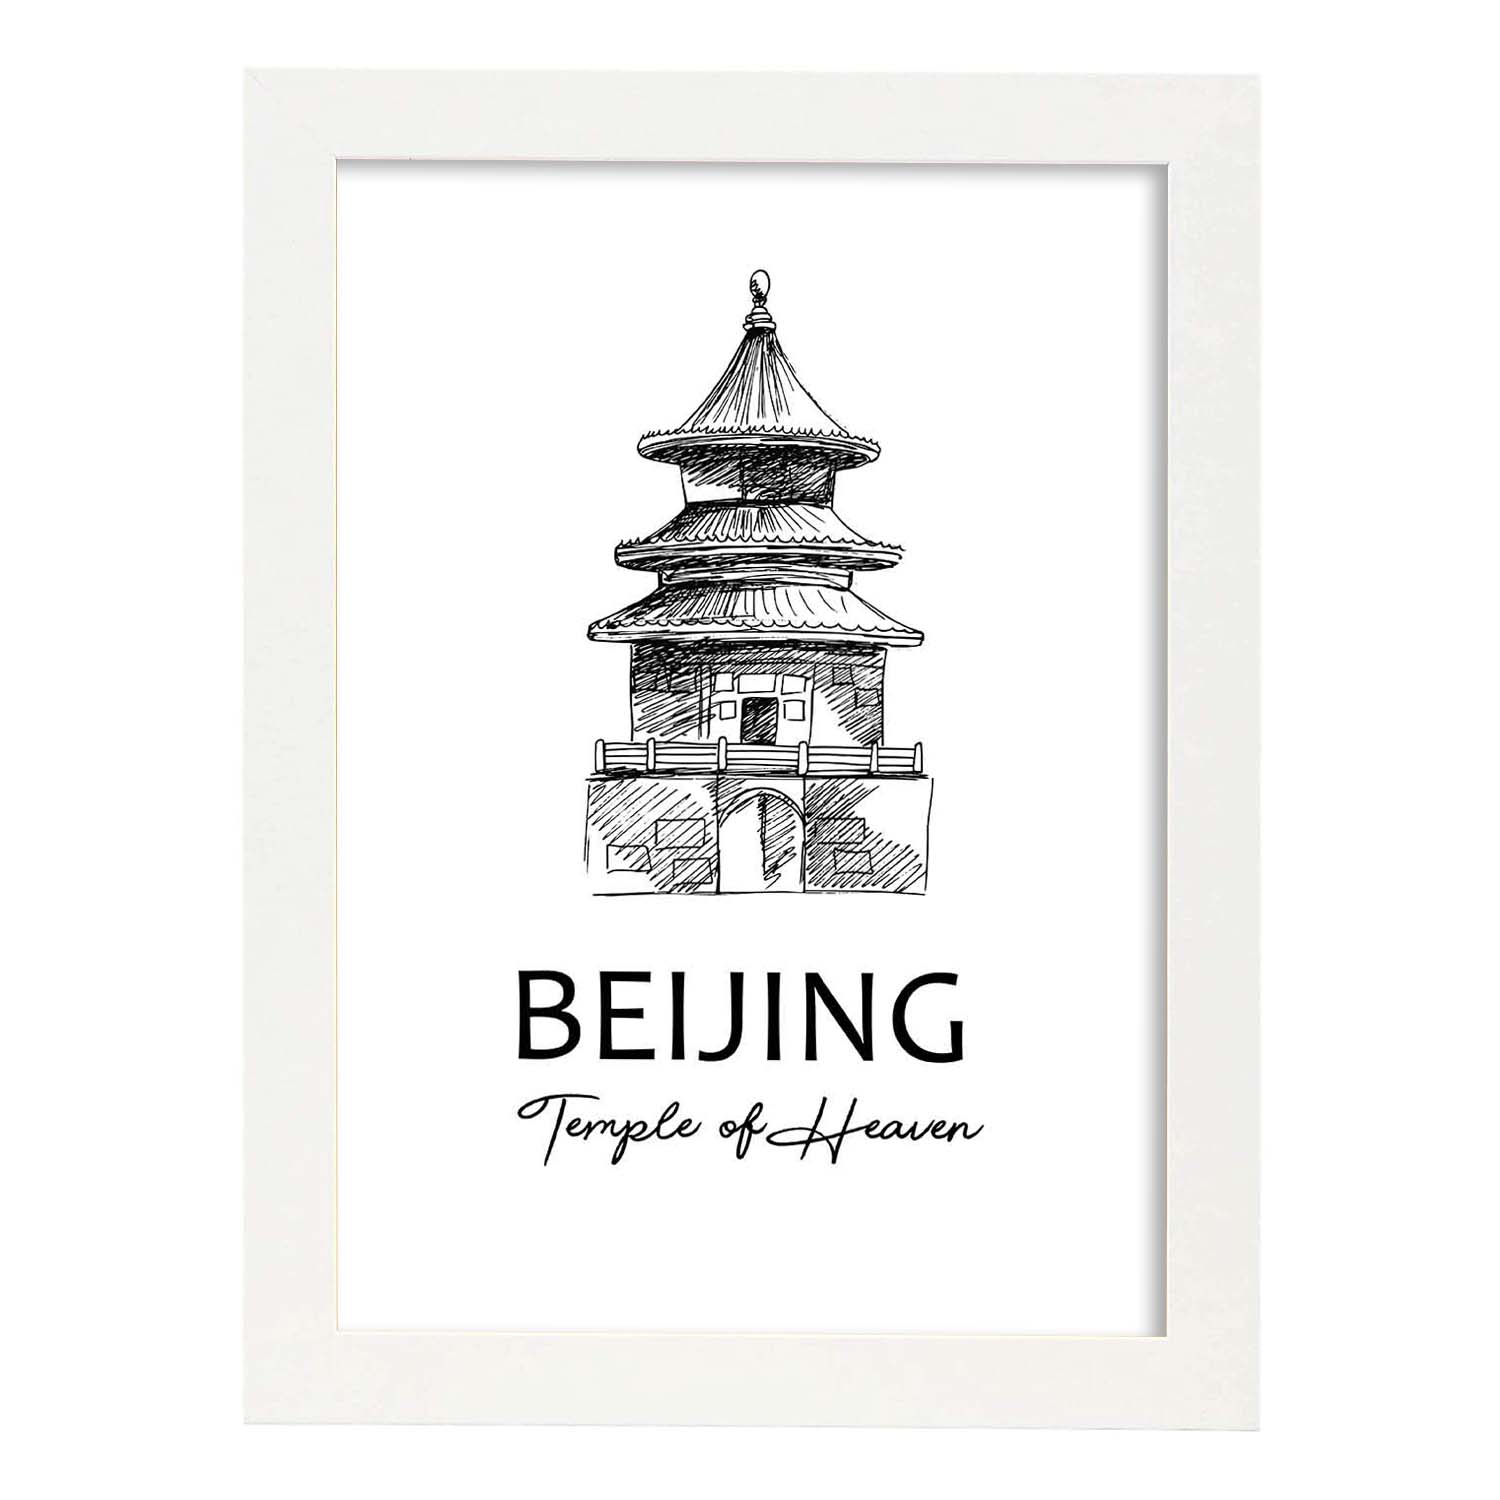 Poster de Beijing - Templo del cielo. Láminas con monumentos de ciudades.-Artwork-Nacnic-A4-Marco Blanco-Nacnic Estudio SL